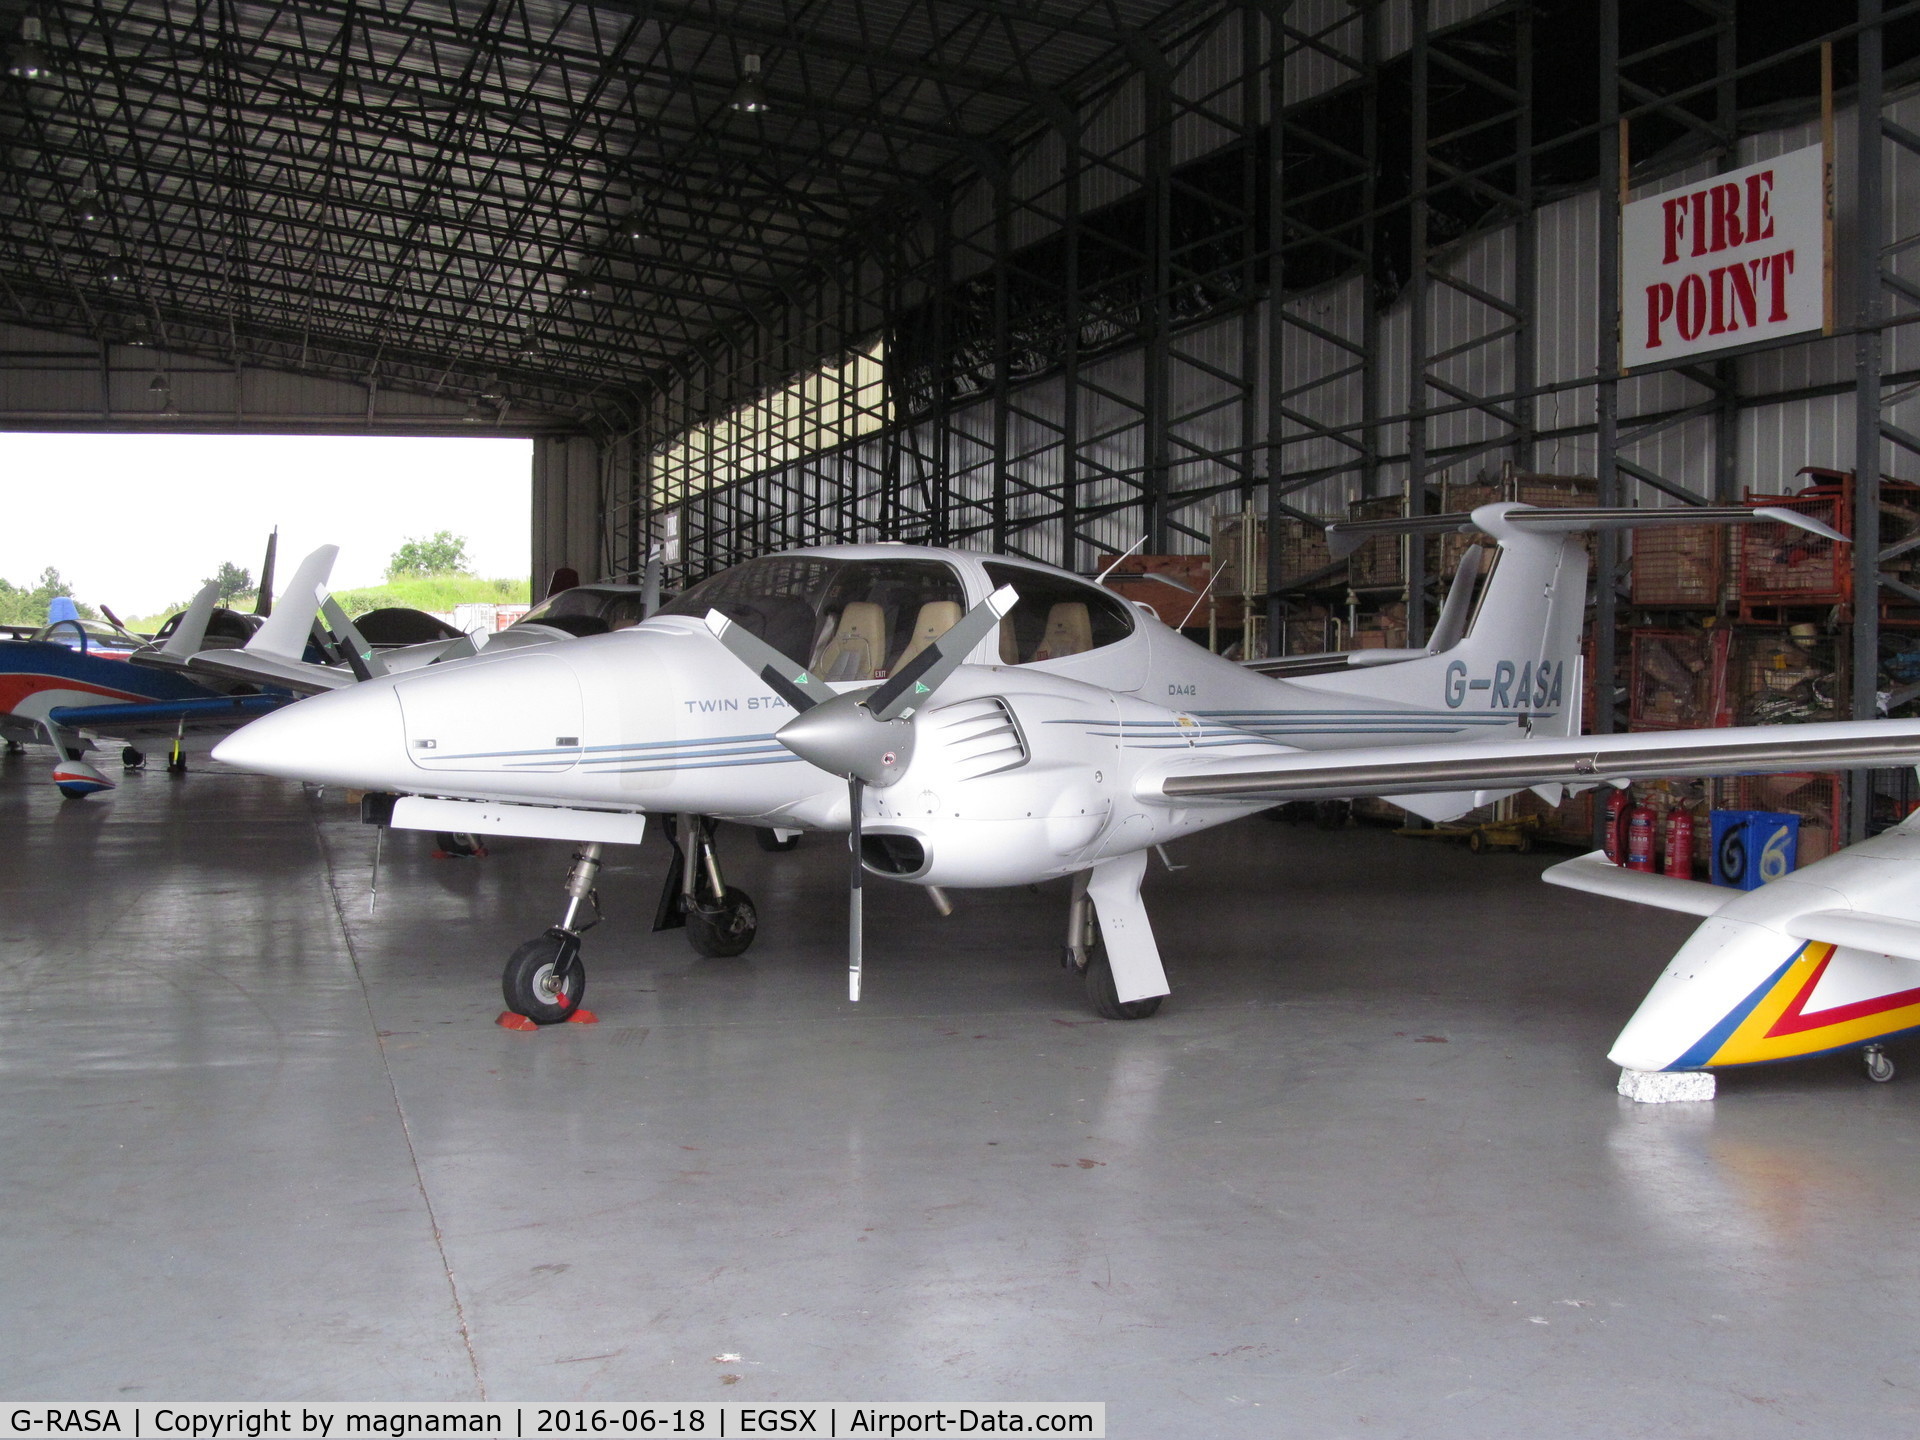 G-RASA, 2006 Diamond DA-42 Twin Star C/N 42.144, in home hangar